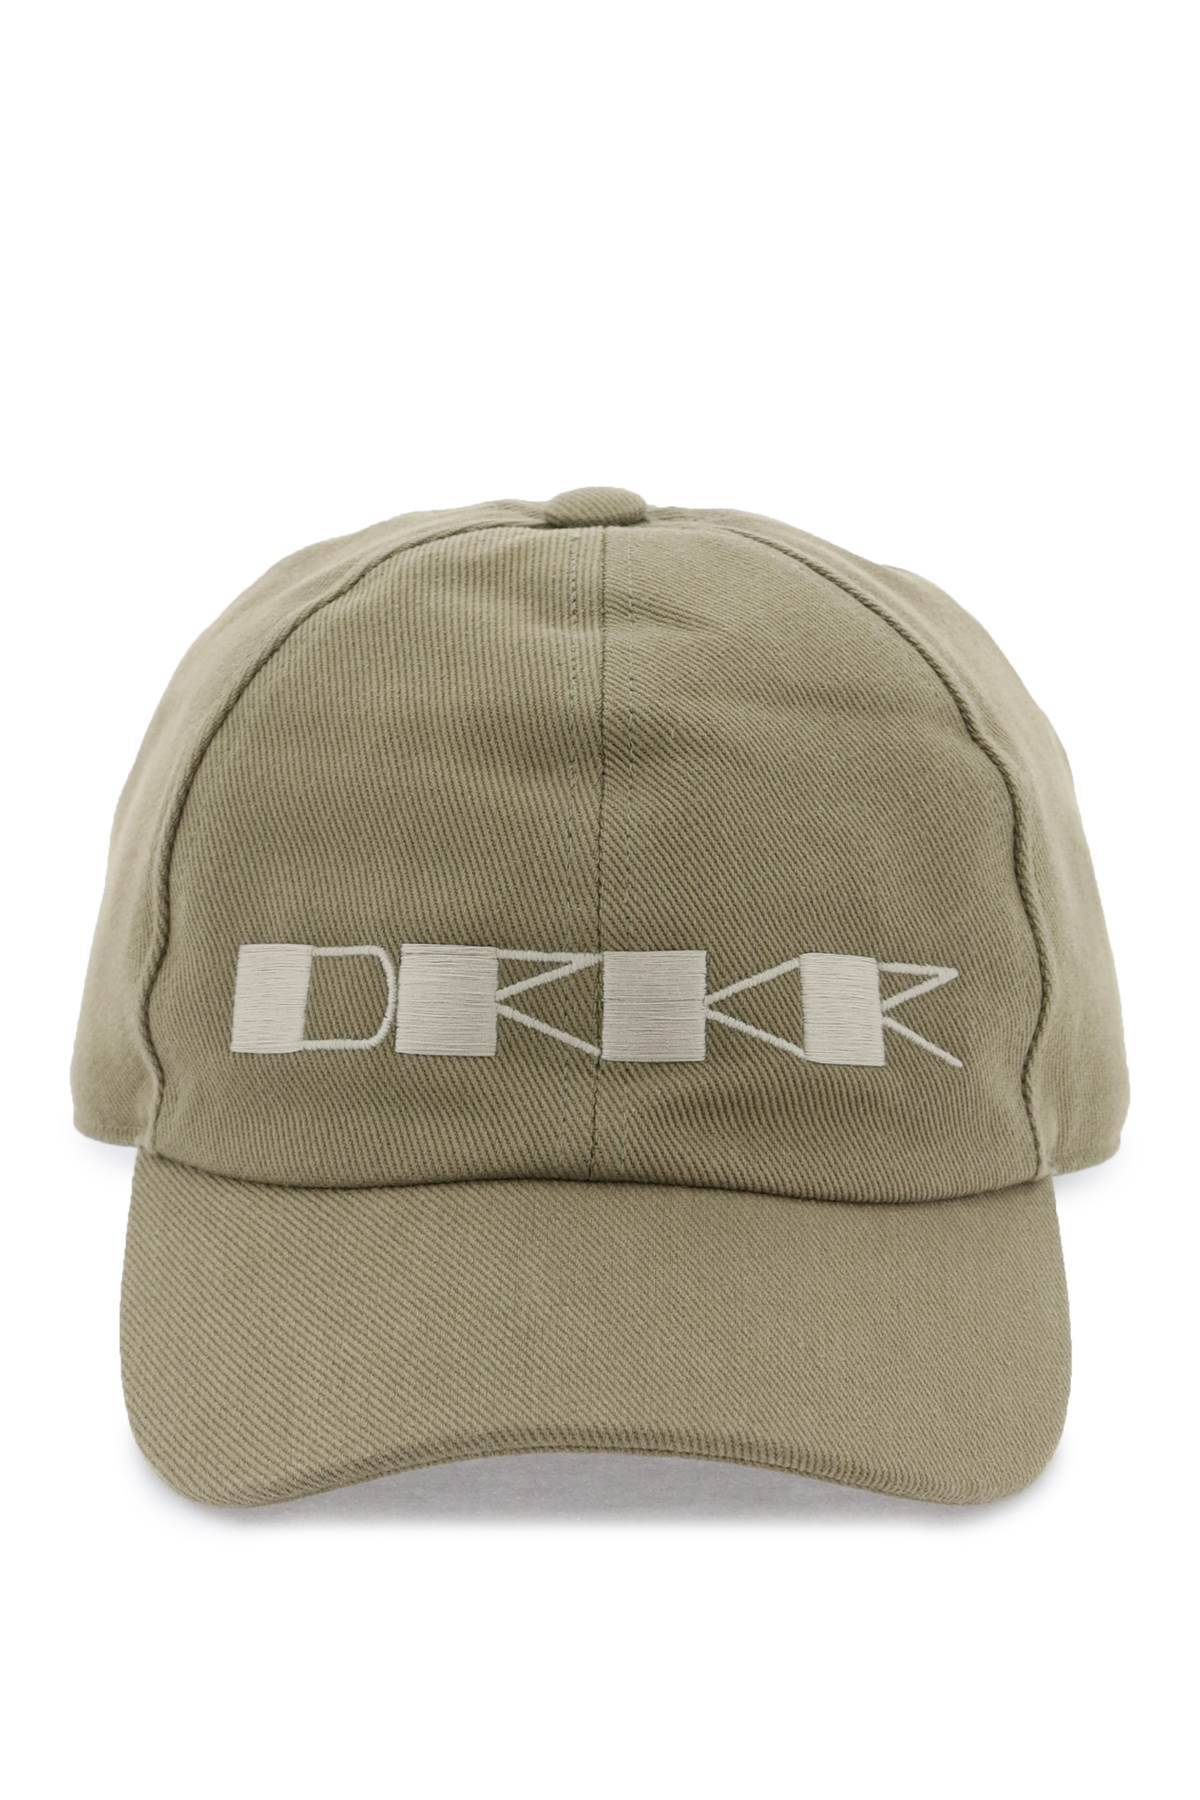 DRKSHDW DRKSHDW embroidered baseball cap